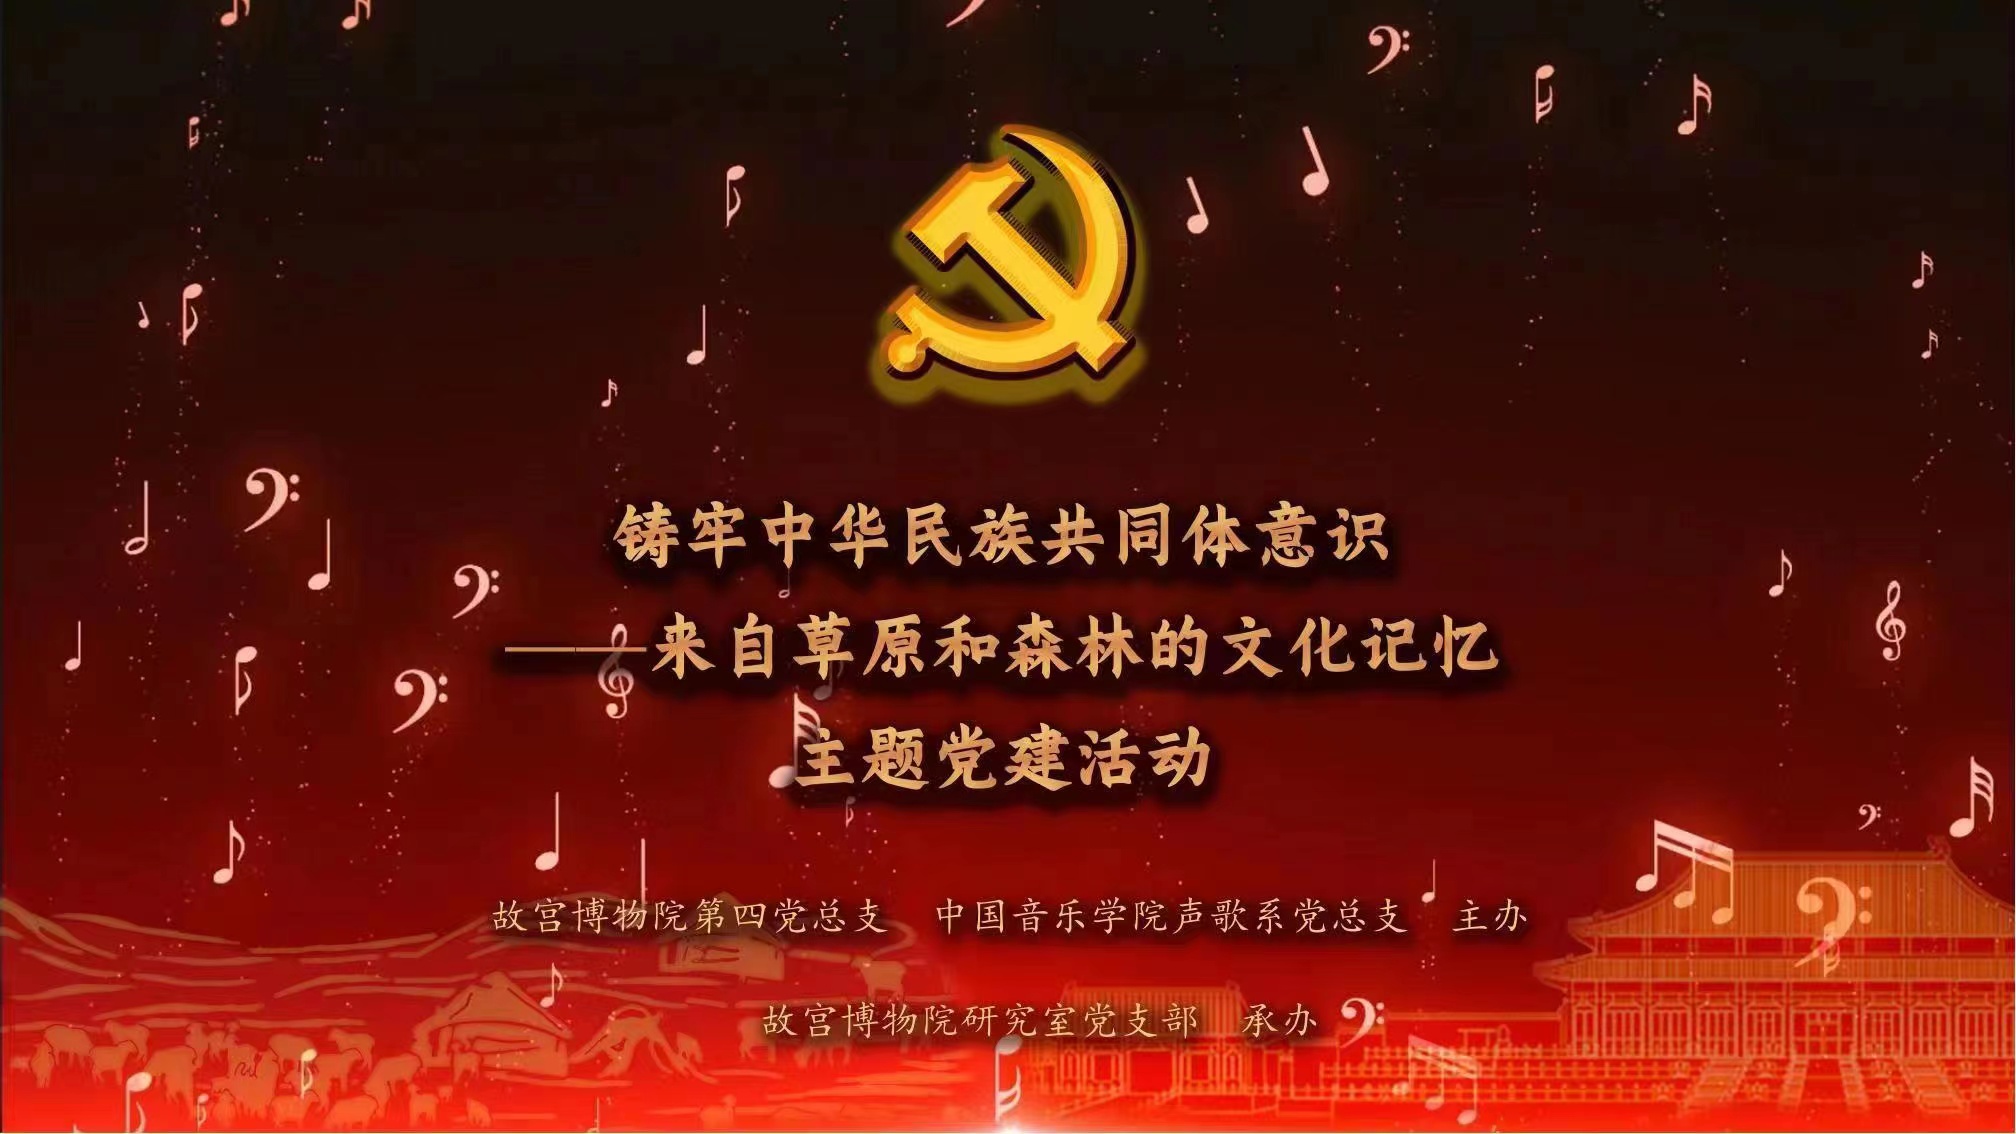 铸牢中华民族共同体意识 ——来自草原和森林的文化记忆 主题党建活动